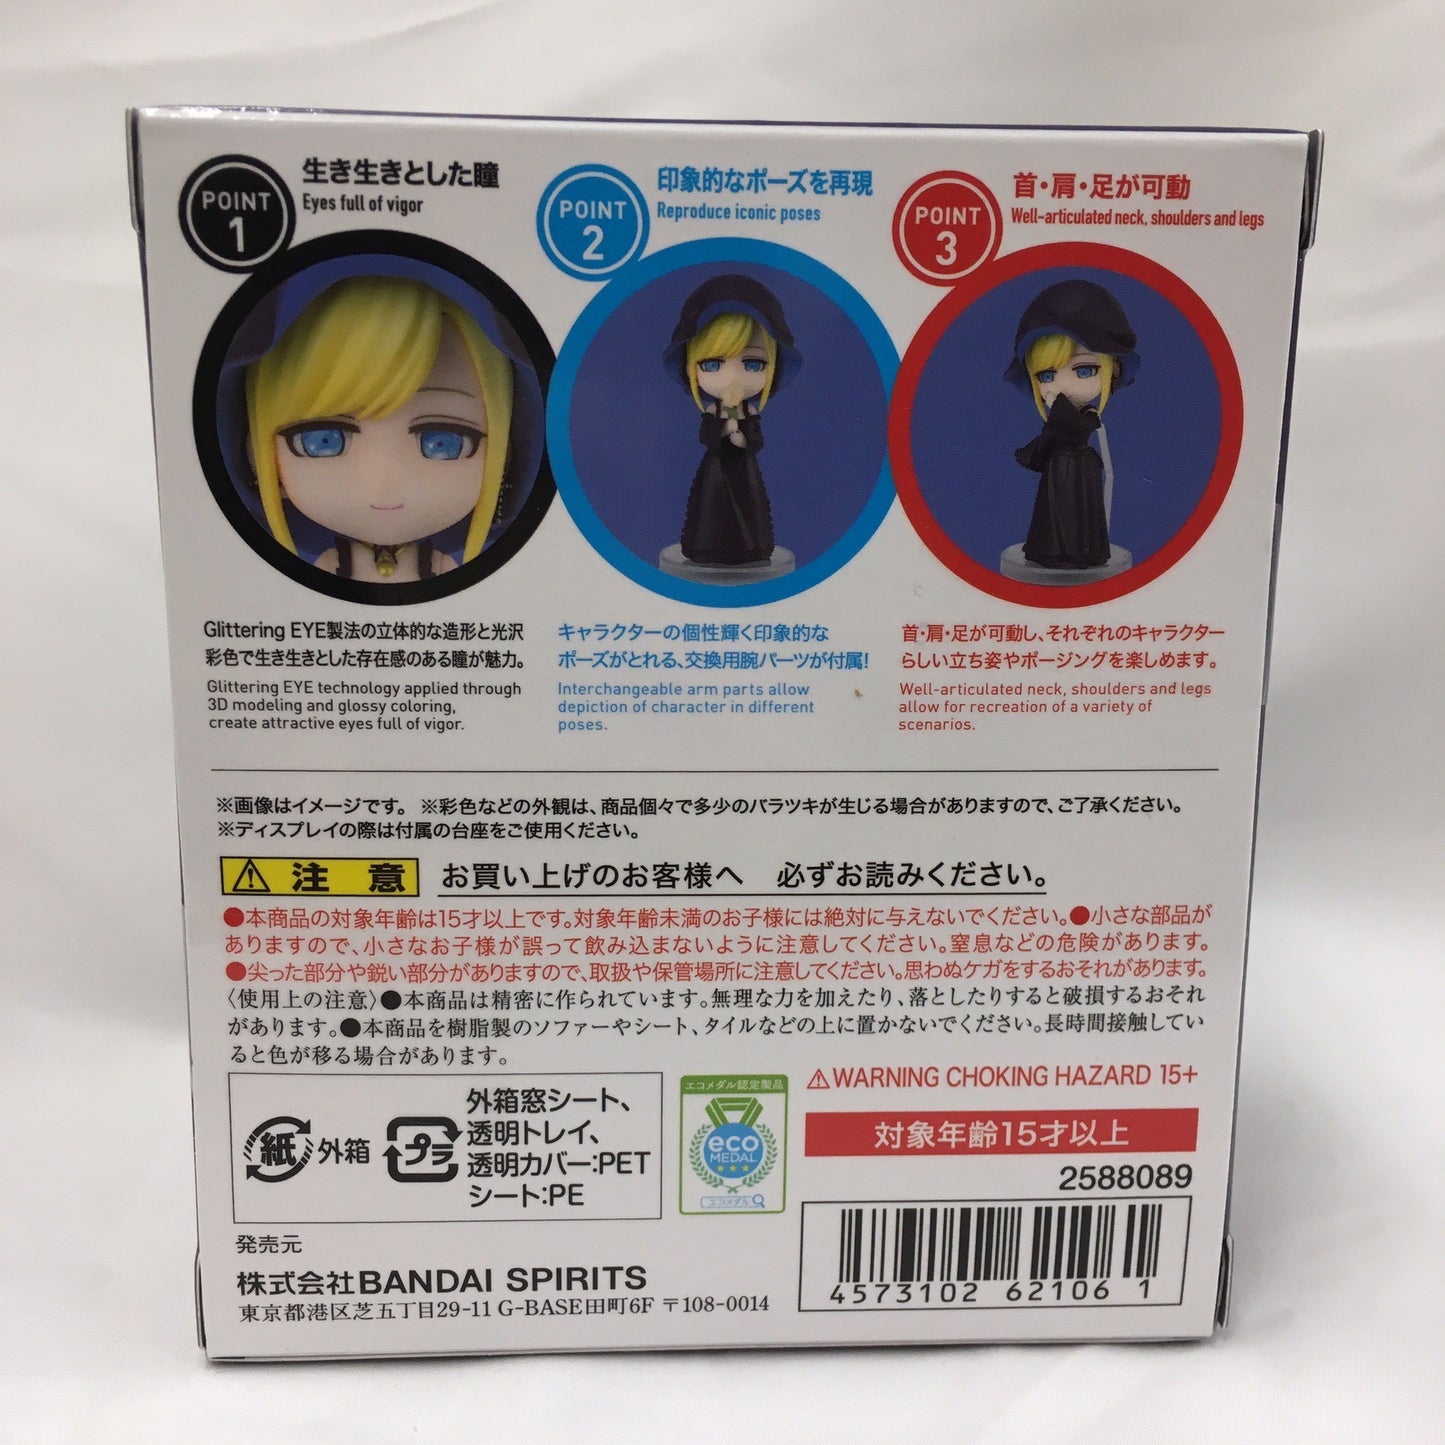 Figuarts Mini Alice „Shinigami Bochan und Black Maid“